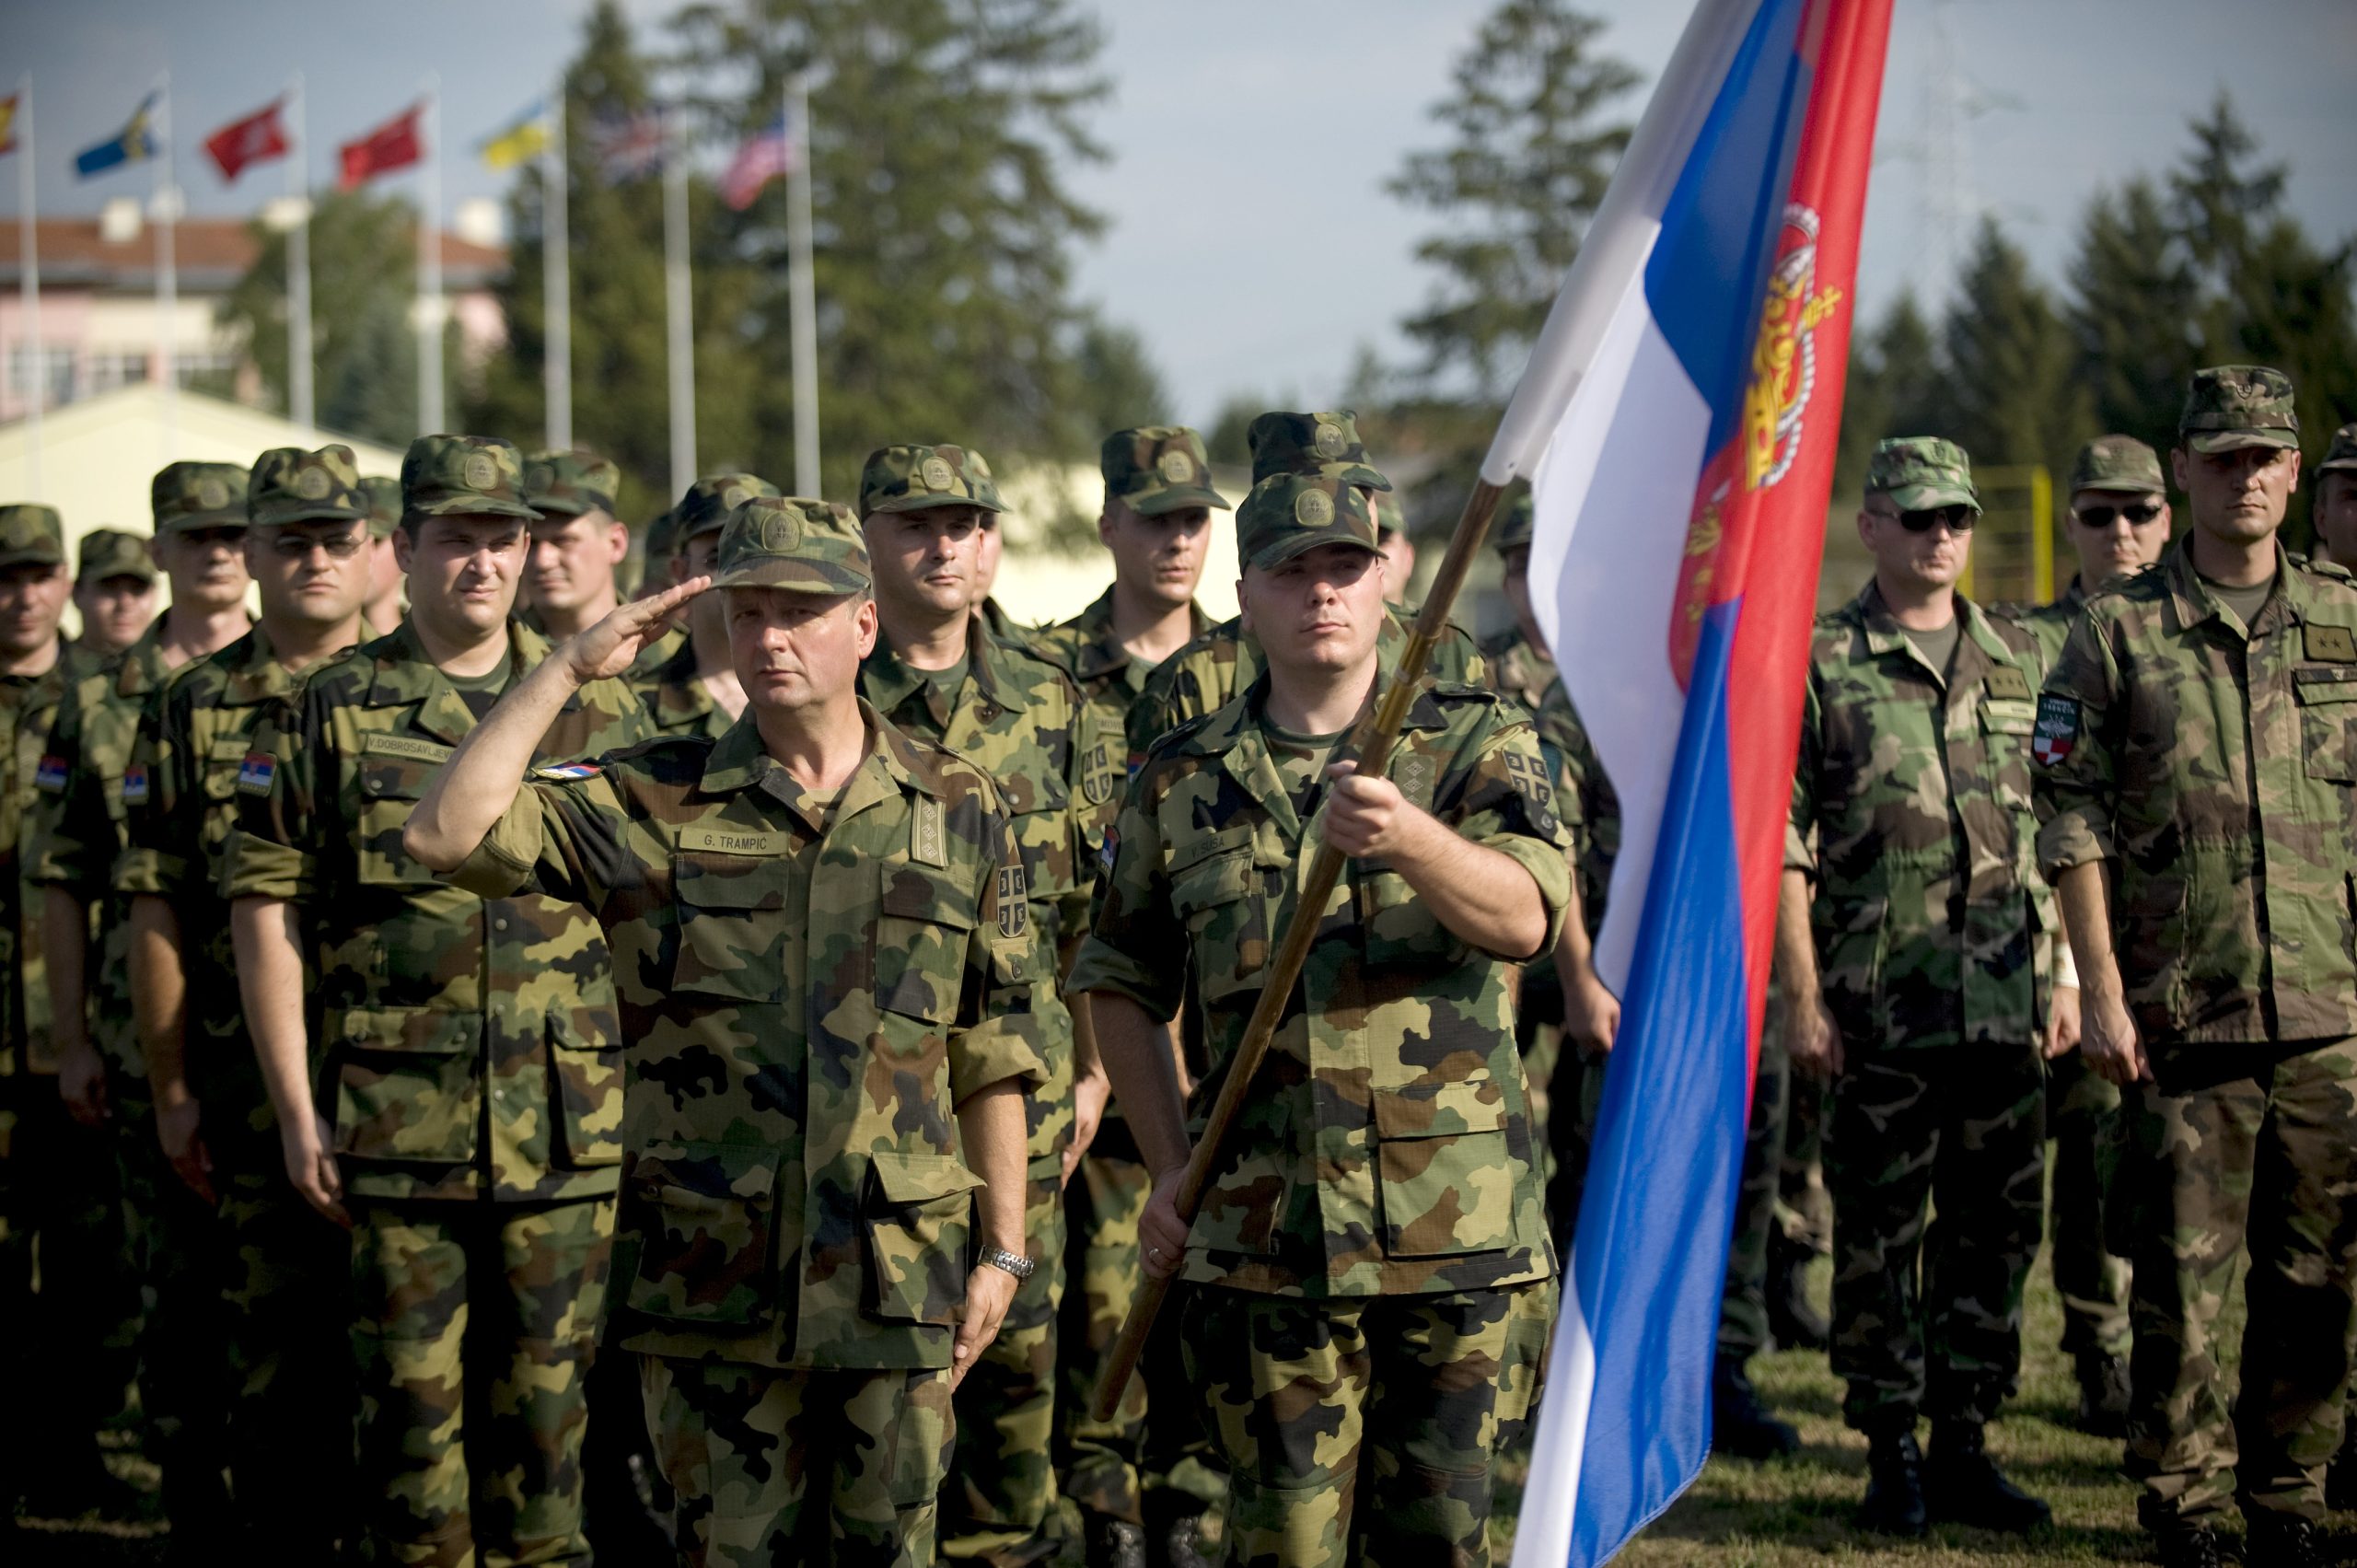 Οι Σέρβοι της Βοσνίας απειλούν με ανακήρυξη ανεξαρτησίας αν ο ΟΗΕ δεχτεί το Κόσοβο ως μέλος του – Σε ετοιμότητα η KFOR